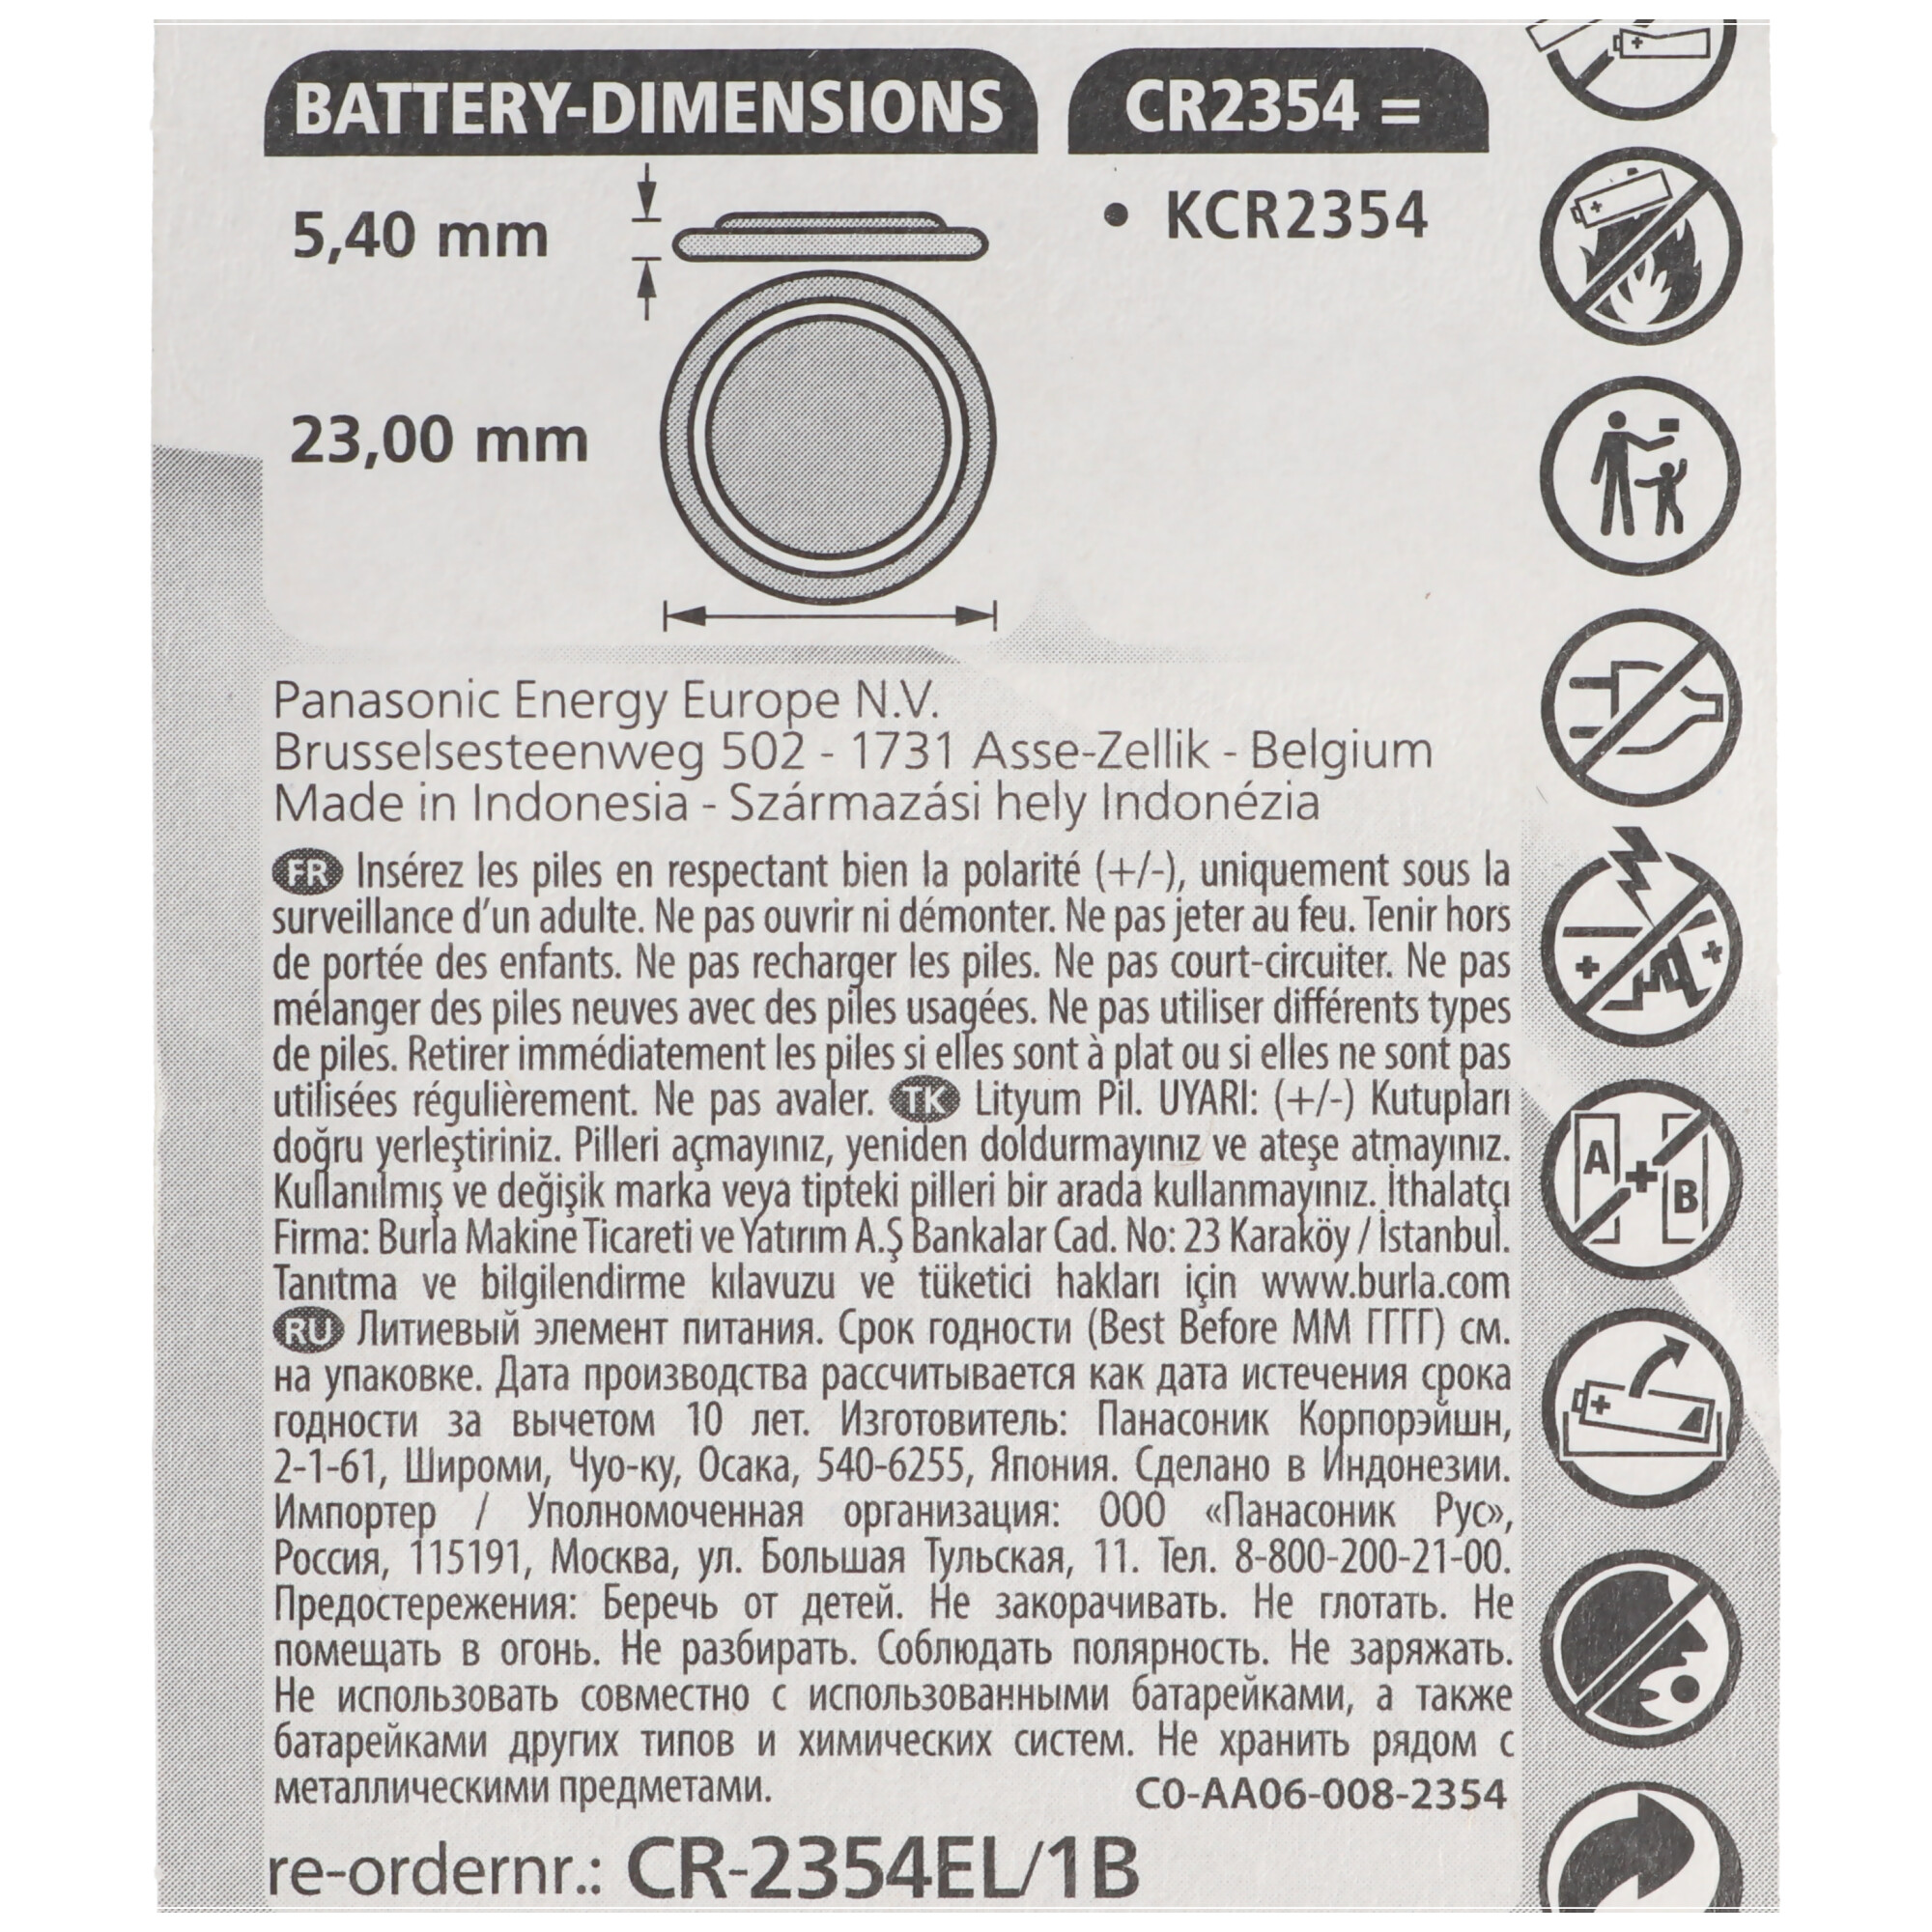 CR2354 Lithium Batterie Knopfzelle IEC CR2354 mit Vertiefung am Minuspol beachten